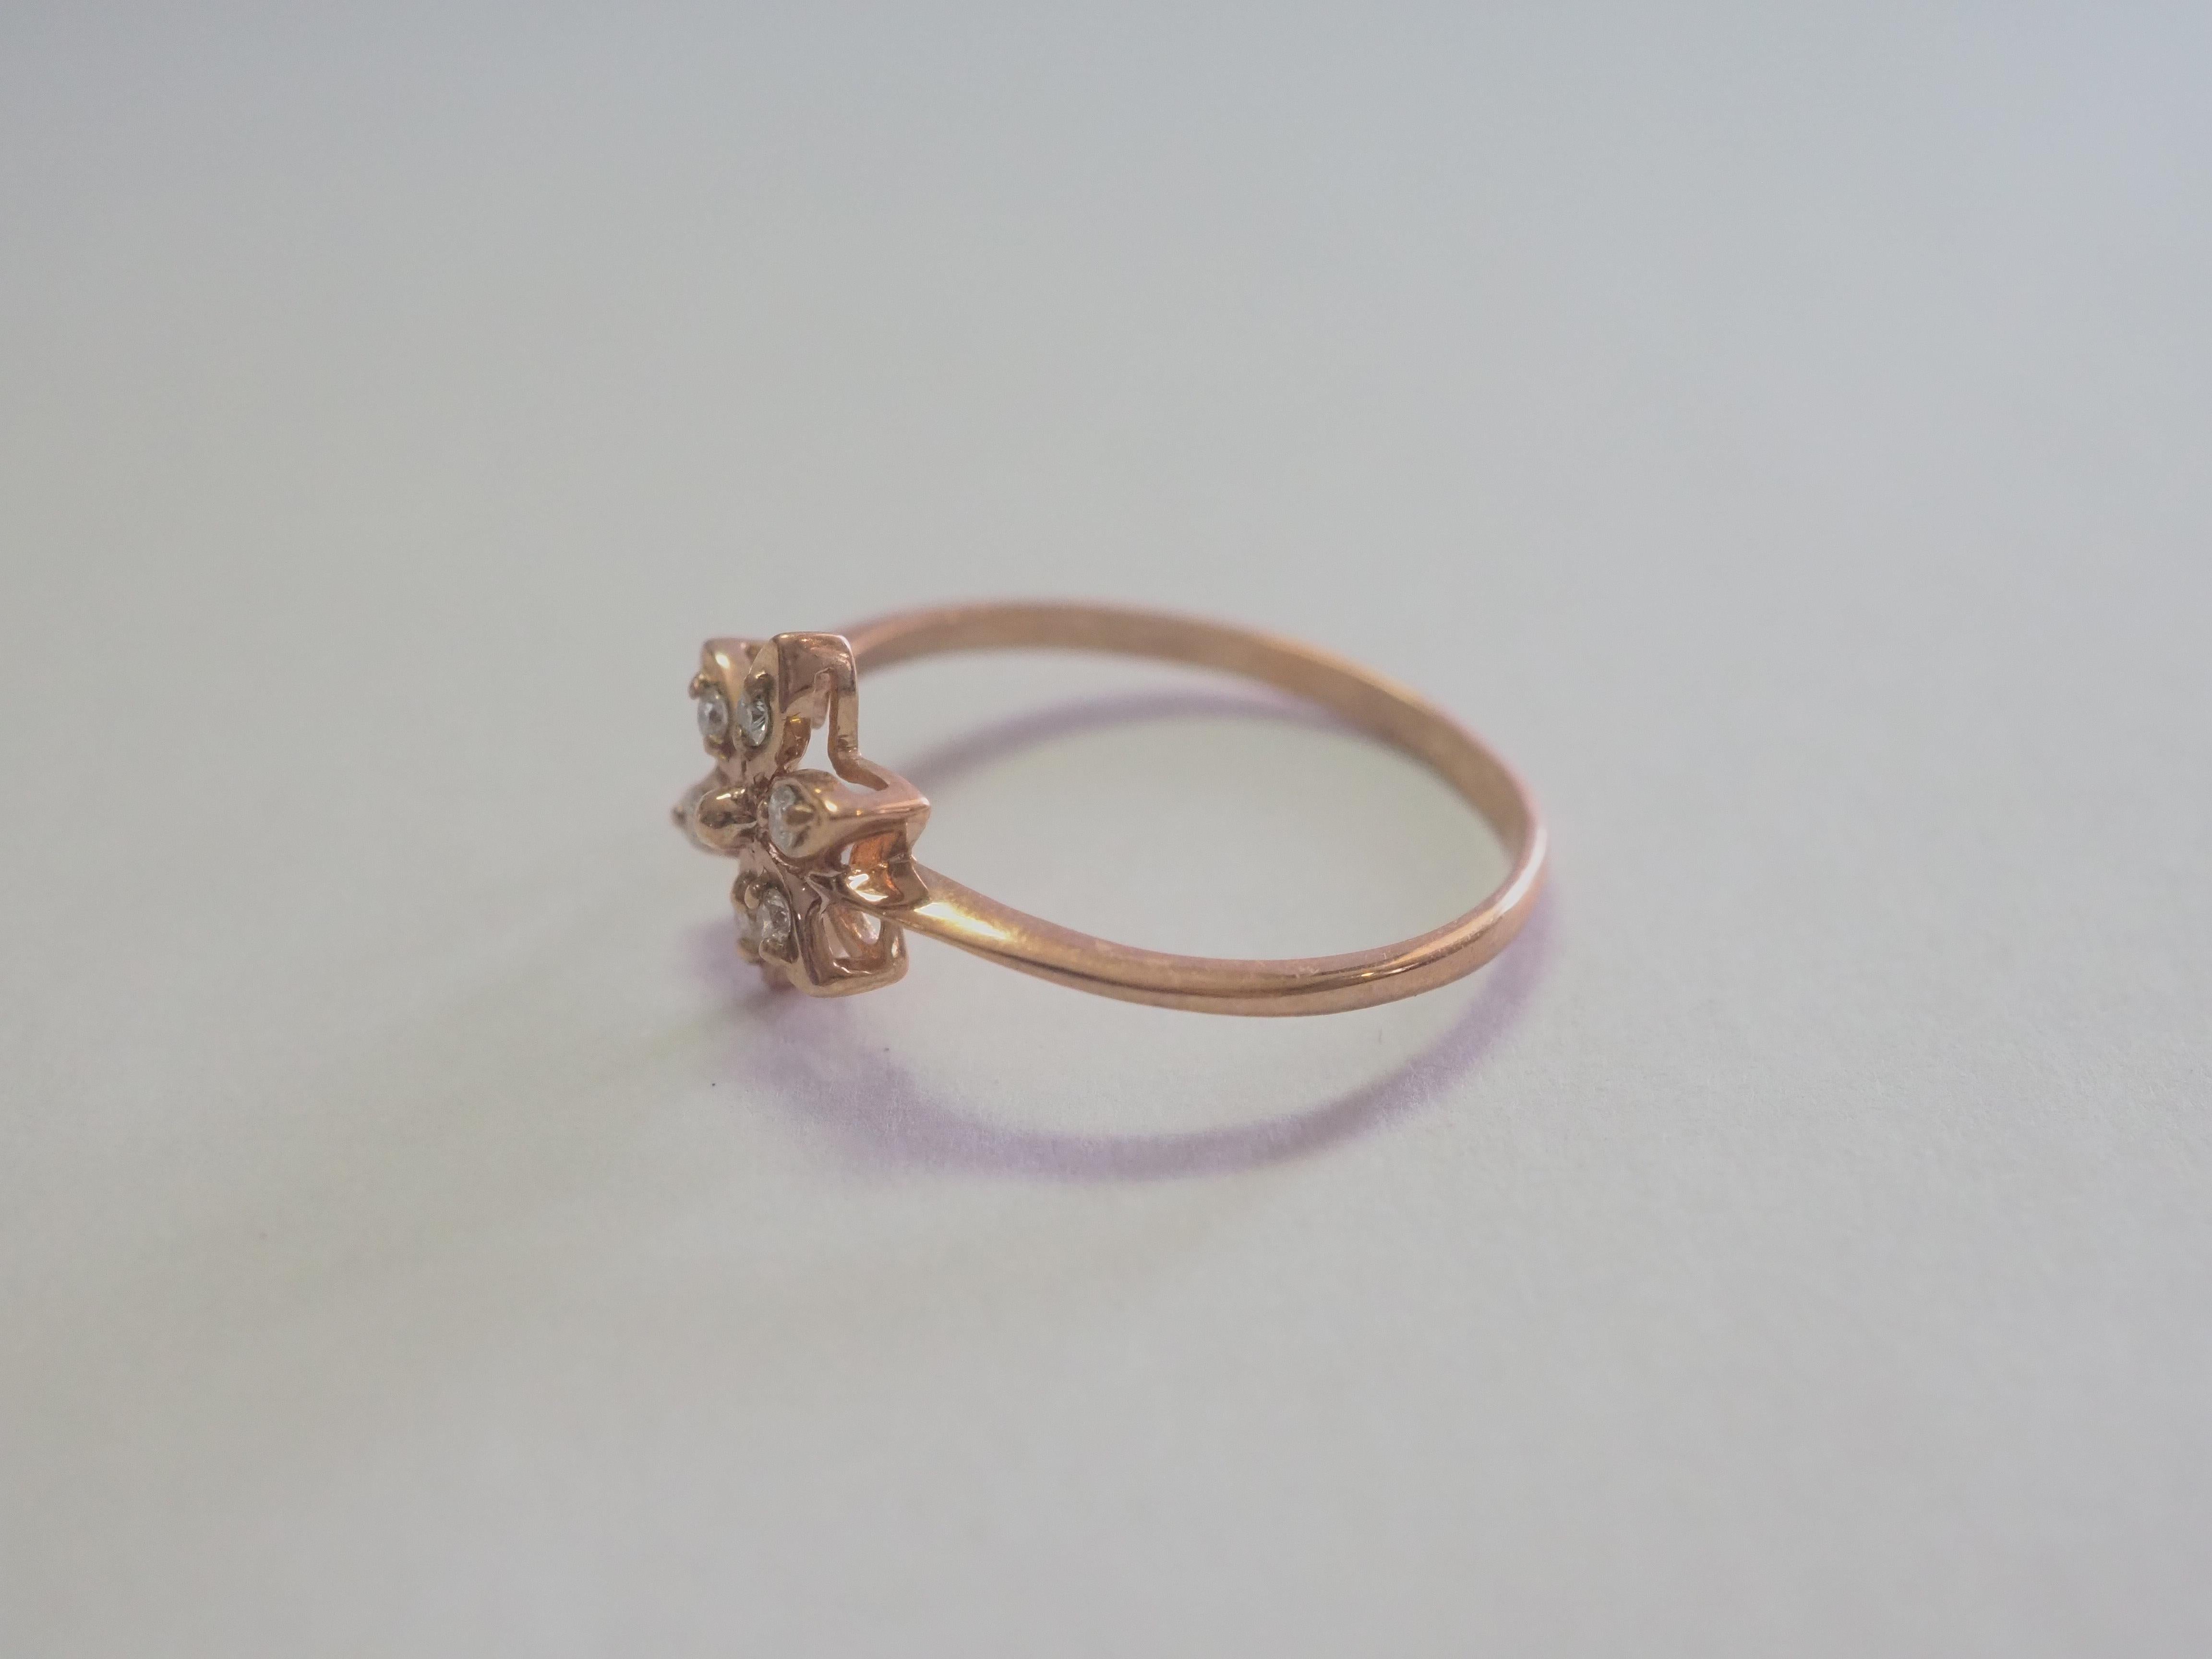 Dieser feine, zierliche Ring ist perfekt für das tägliche Tragen. Im Inneren sind insgesamt sechs runde und glänzende Diamanten gefasst. Die Diamanten sind sehr klar und hell. Das Design ist ein zeitgenössisches mit Blumenmuster. Das Design ist